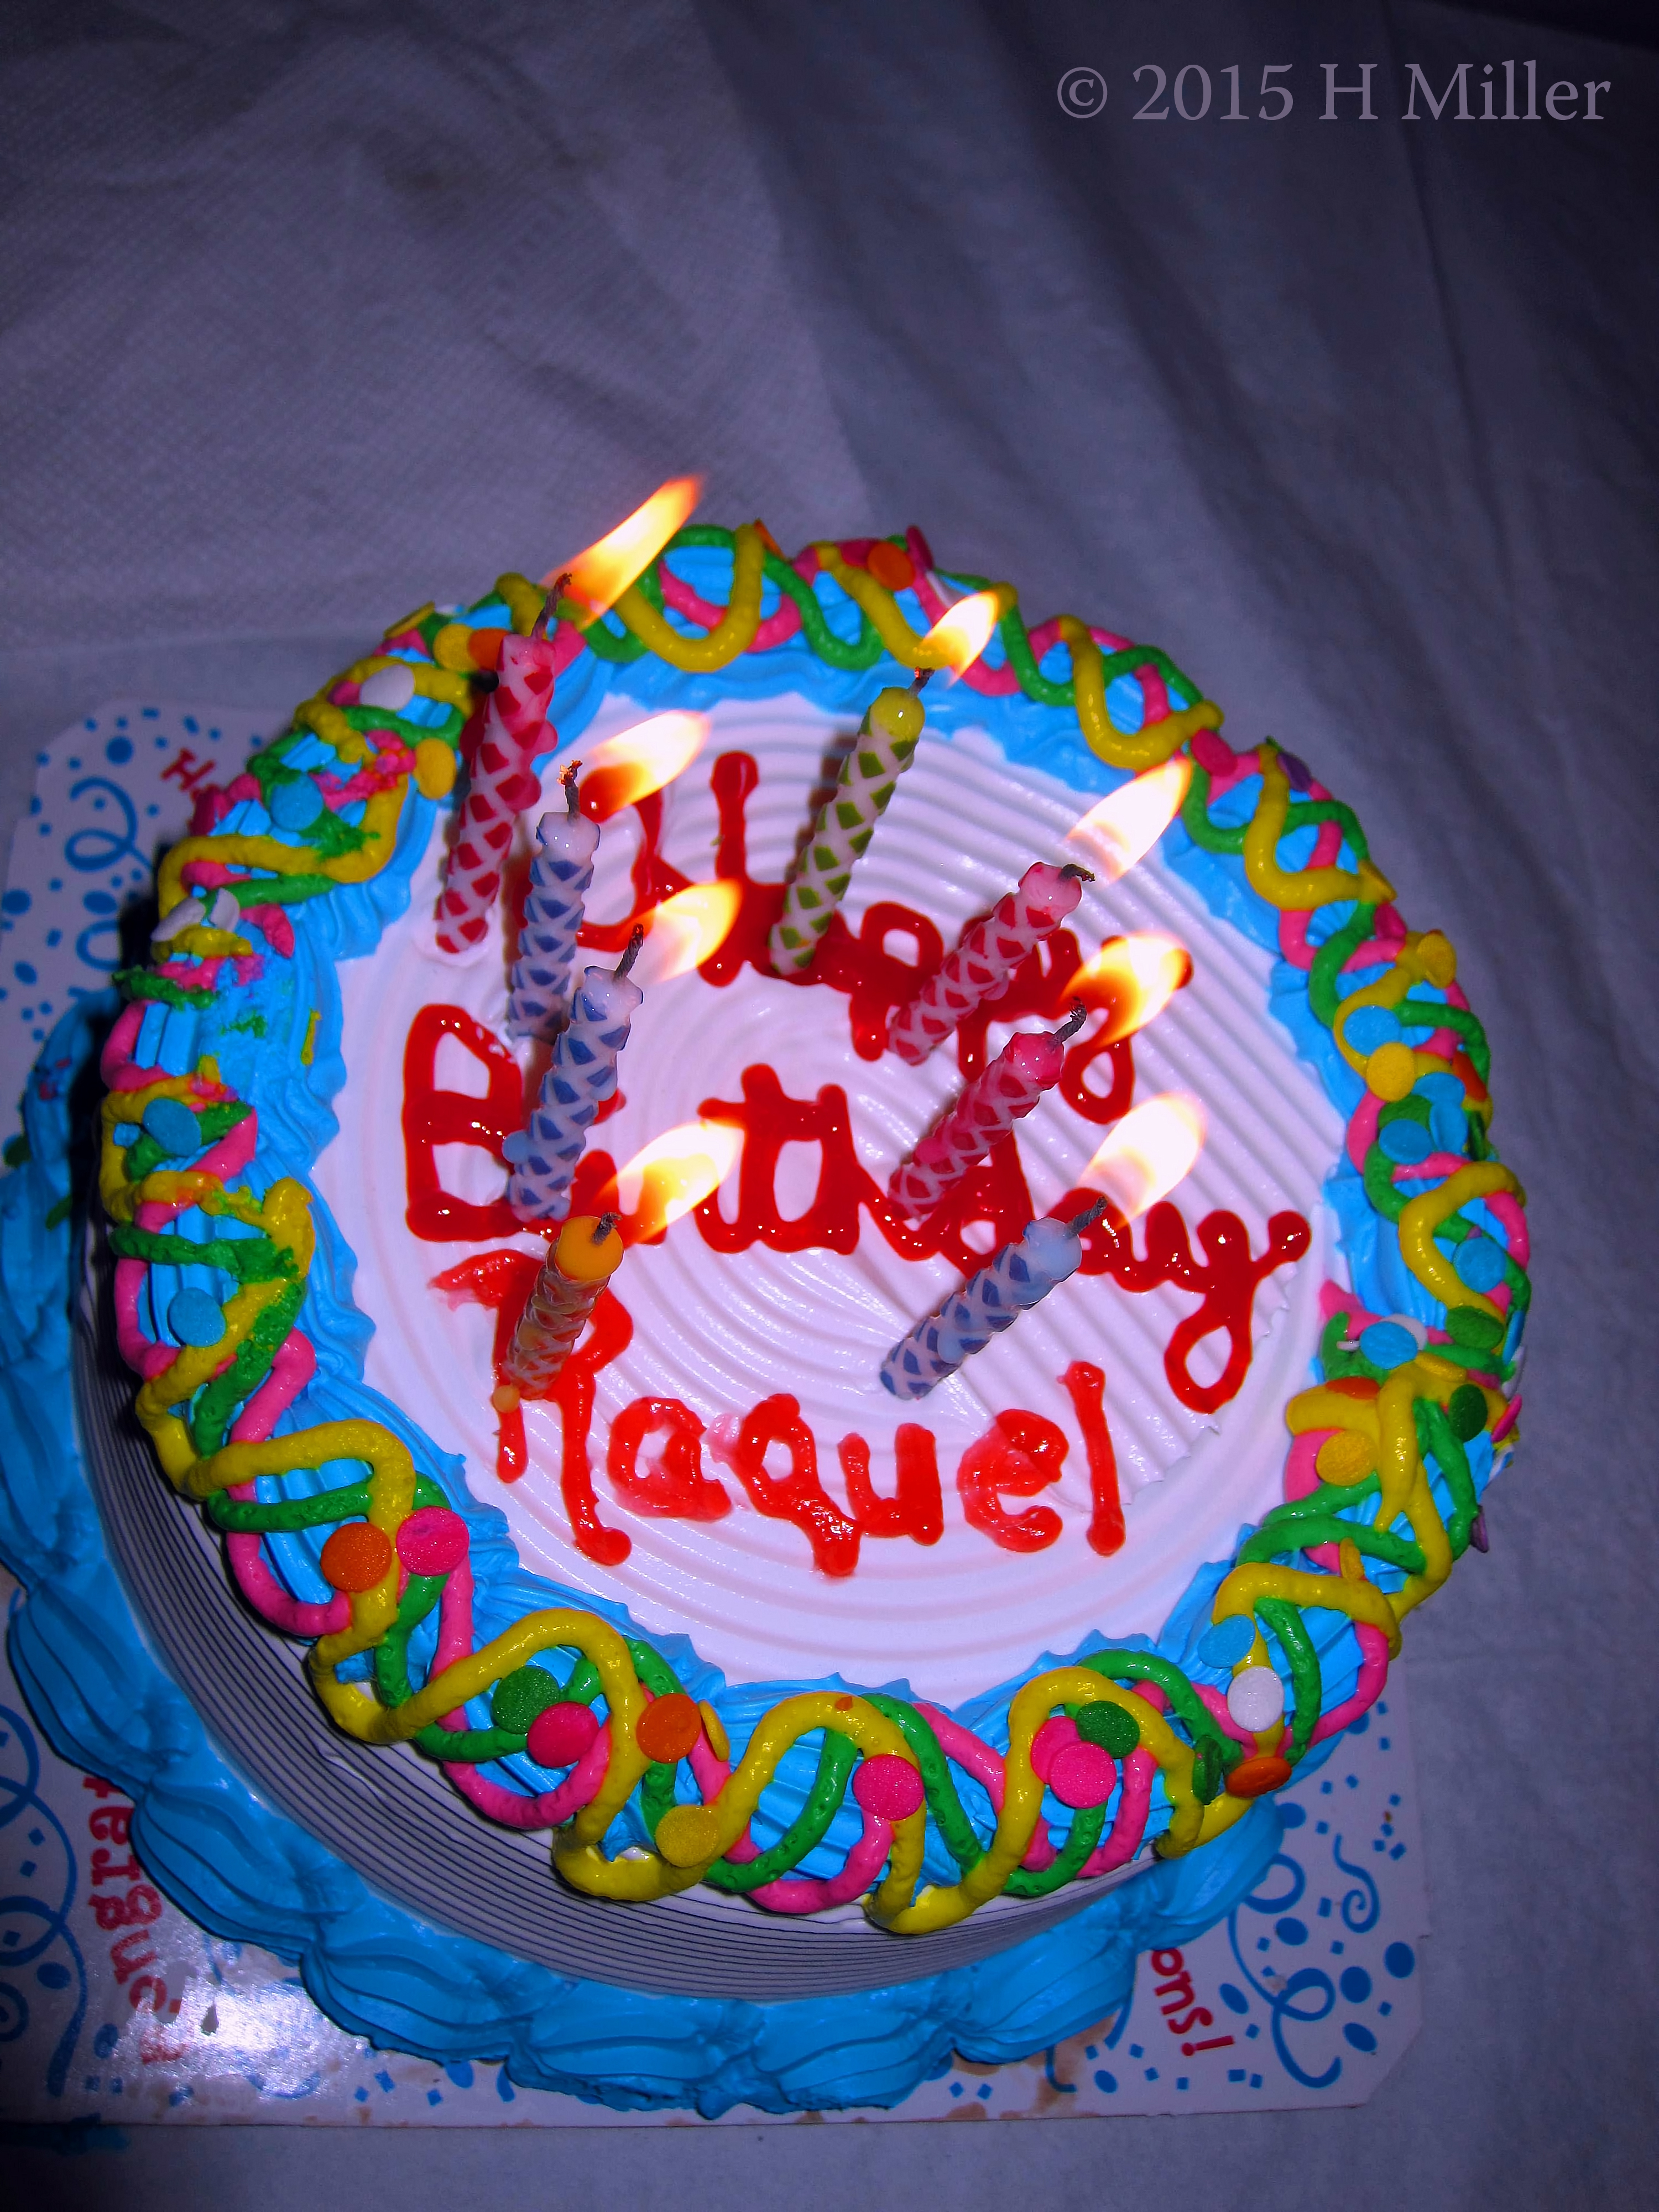 Raquel's Birthday Cake. 